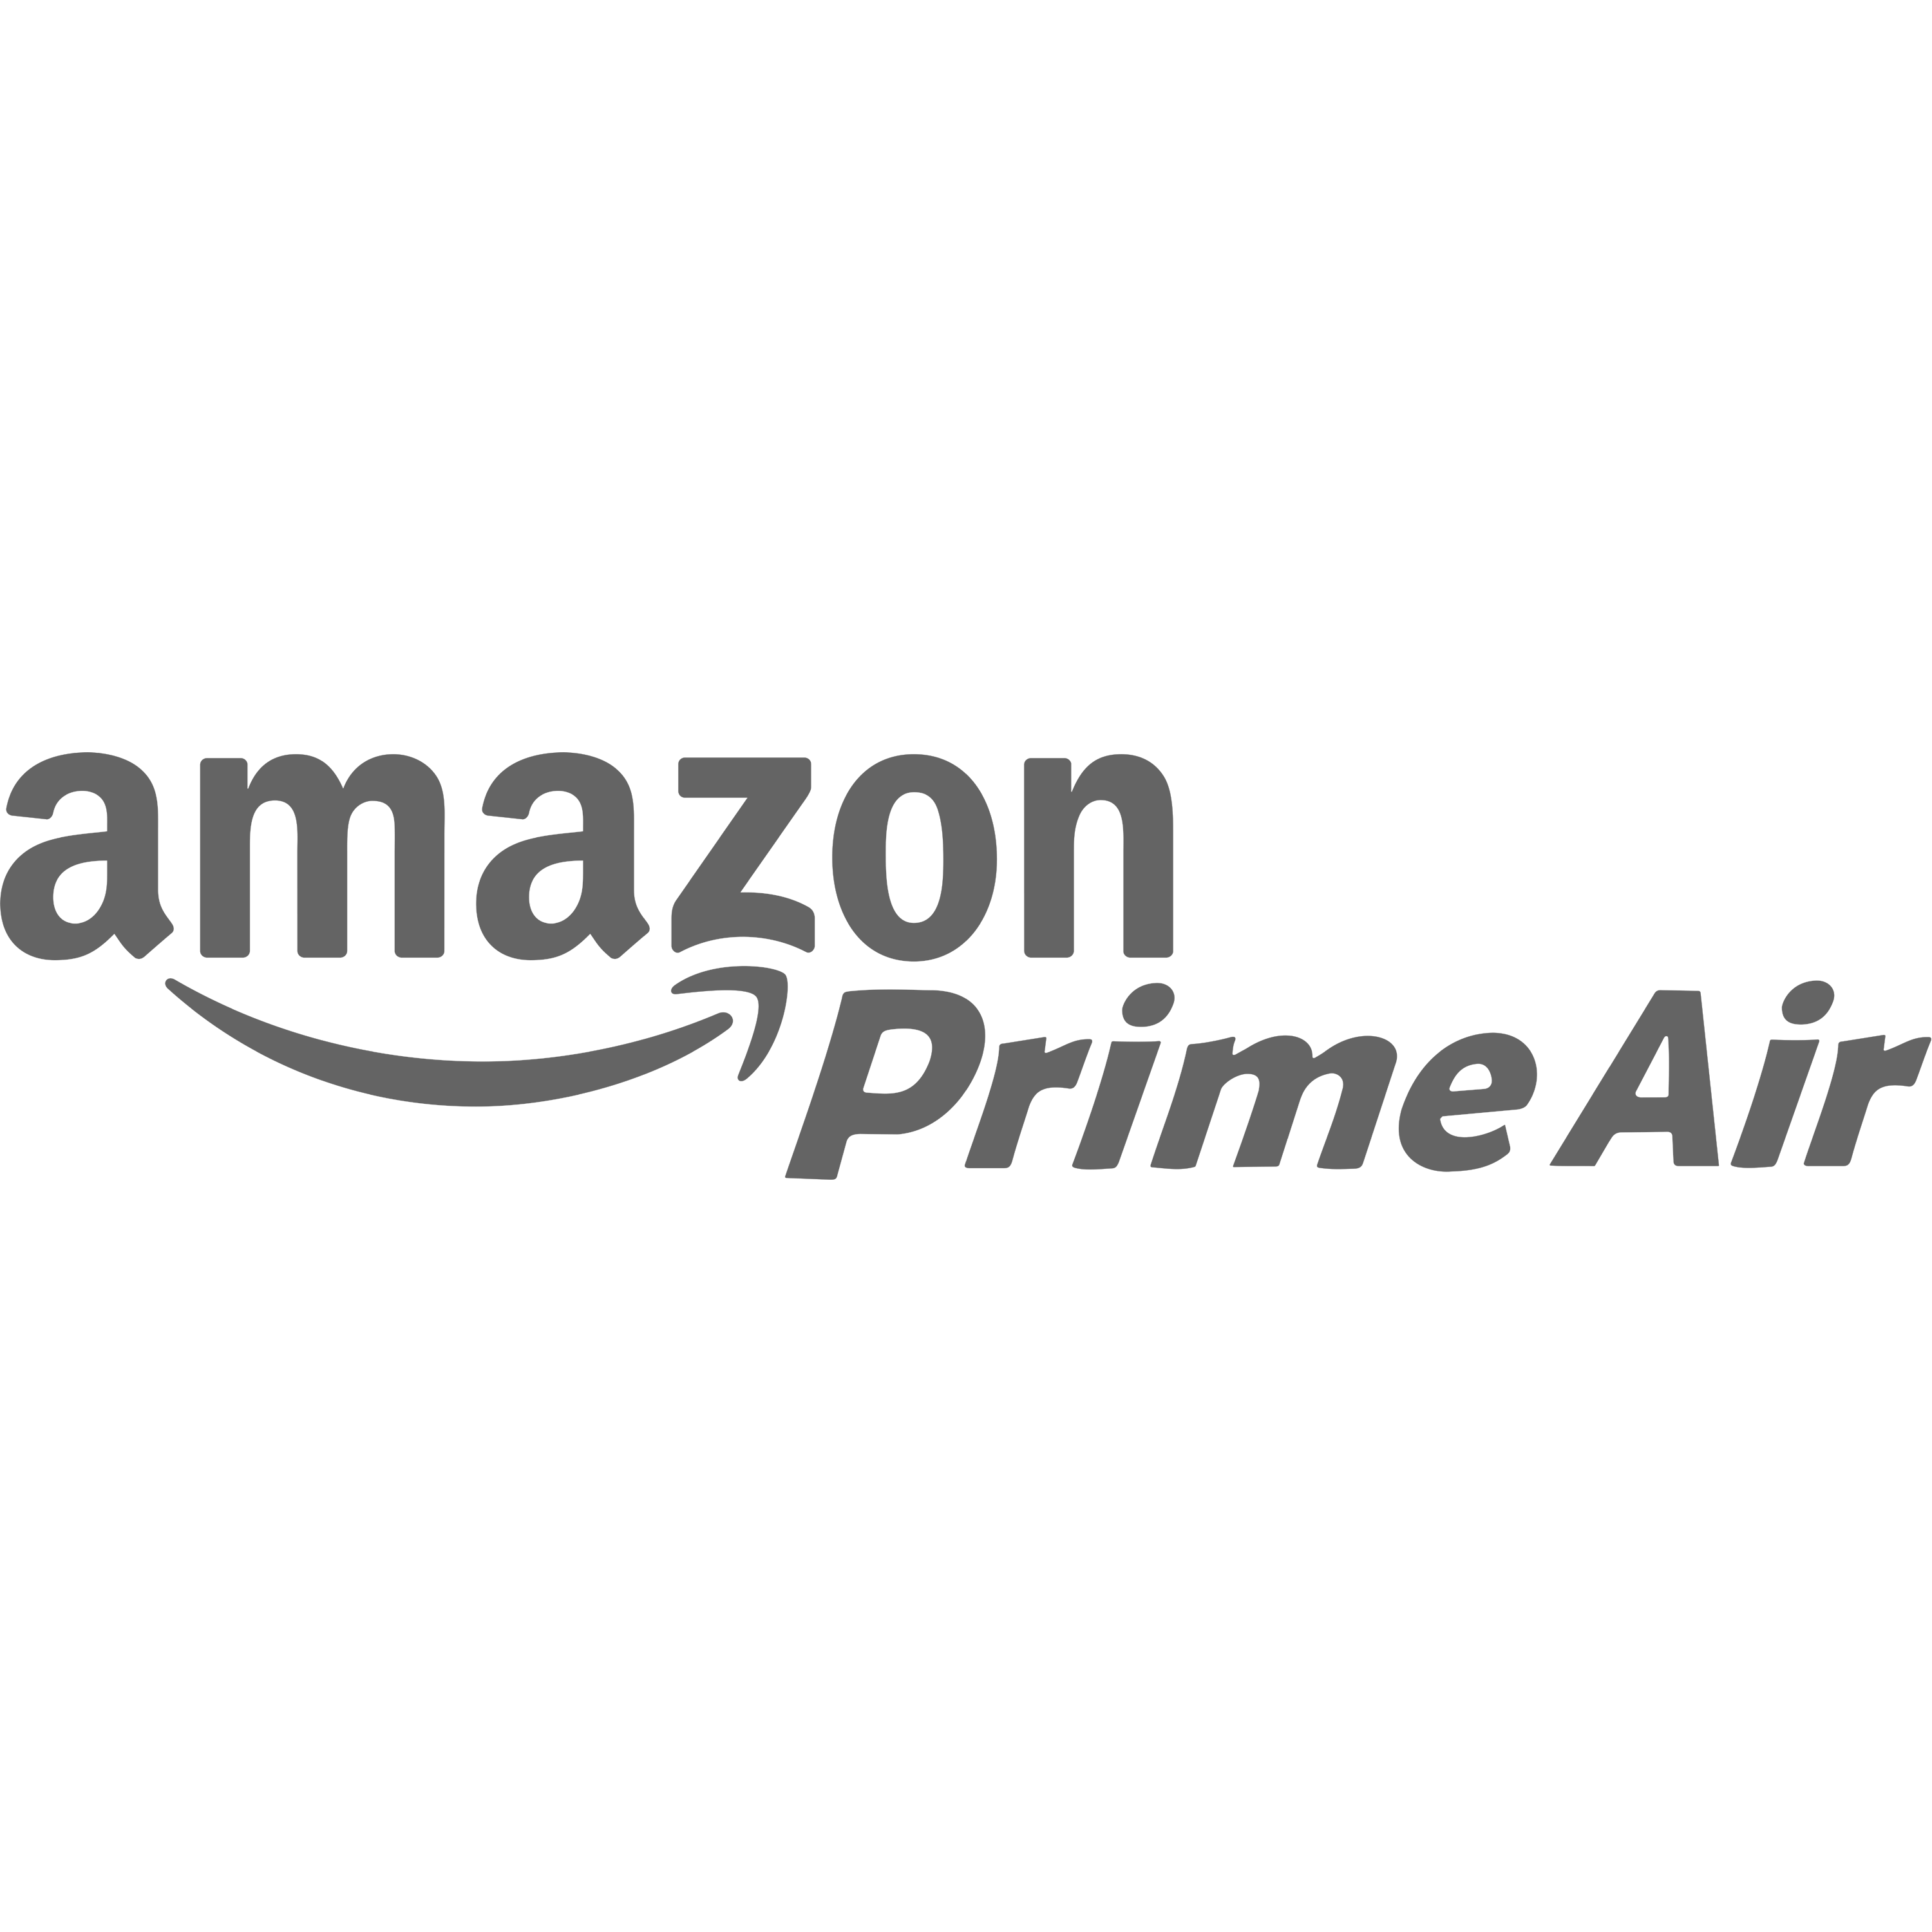 AmAmazon Prime Air Logo Transparent Picture